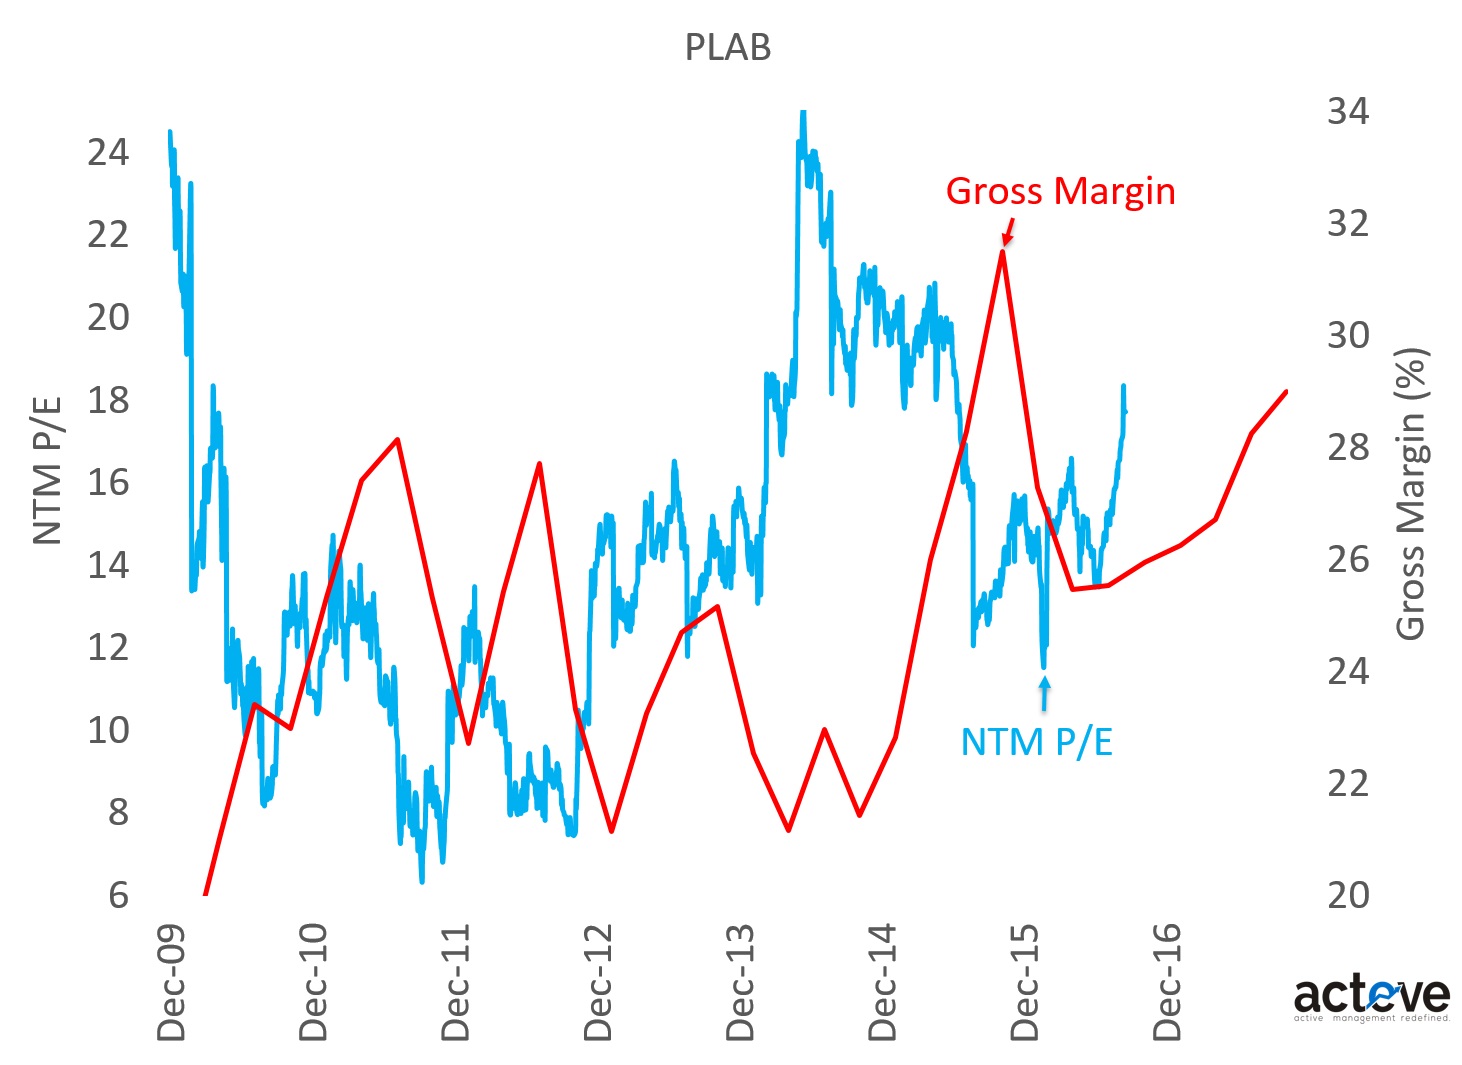 PLAB P/E vs. Gross Margin